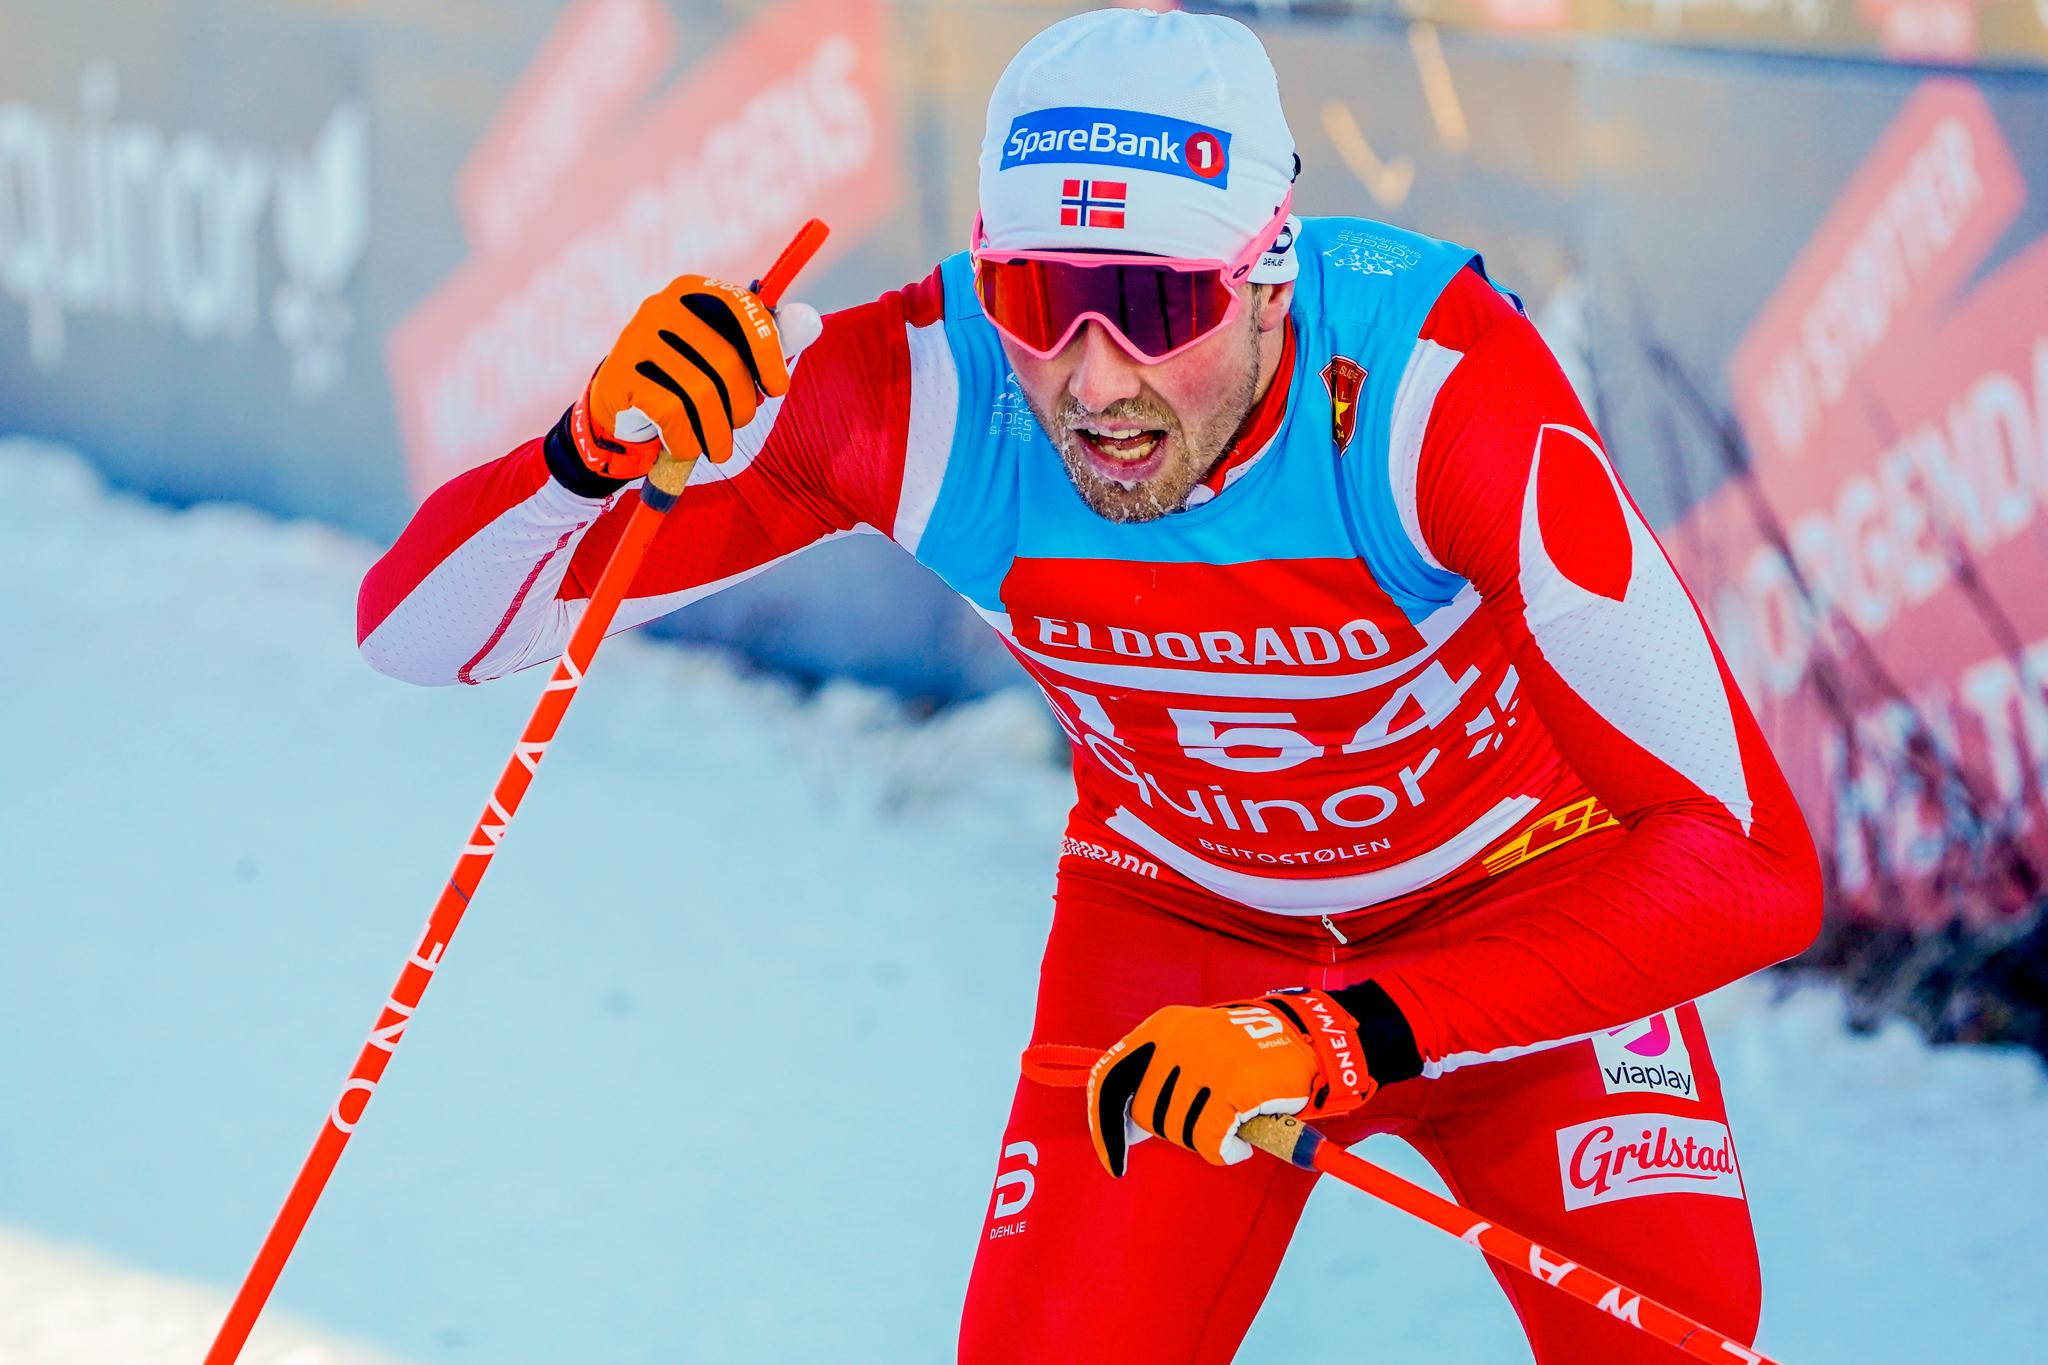 TAR LAGET I FORSVAR: Emil Iversen mener dagens skilandslag er det beste noen gang. 